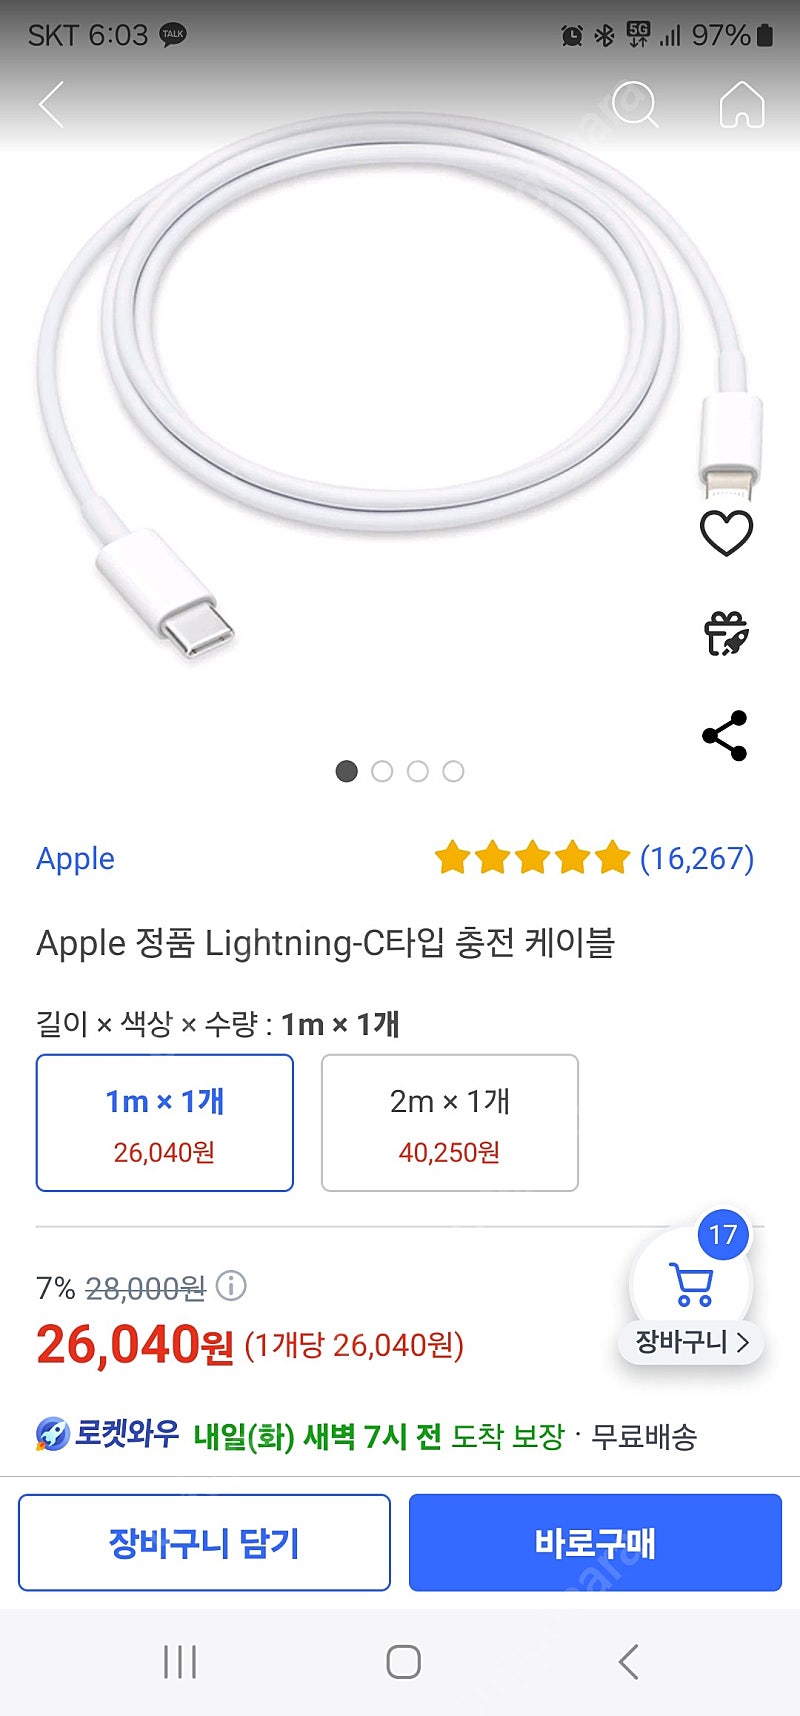 Apple 정품 Lightning-C타입 충전 케이블